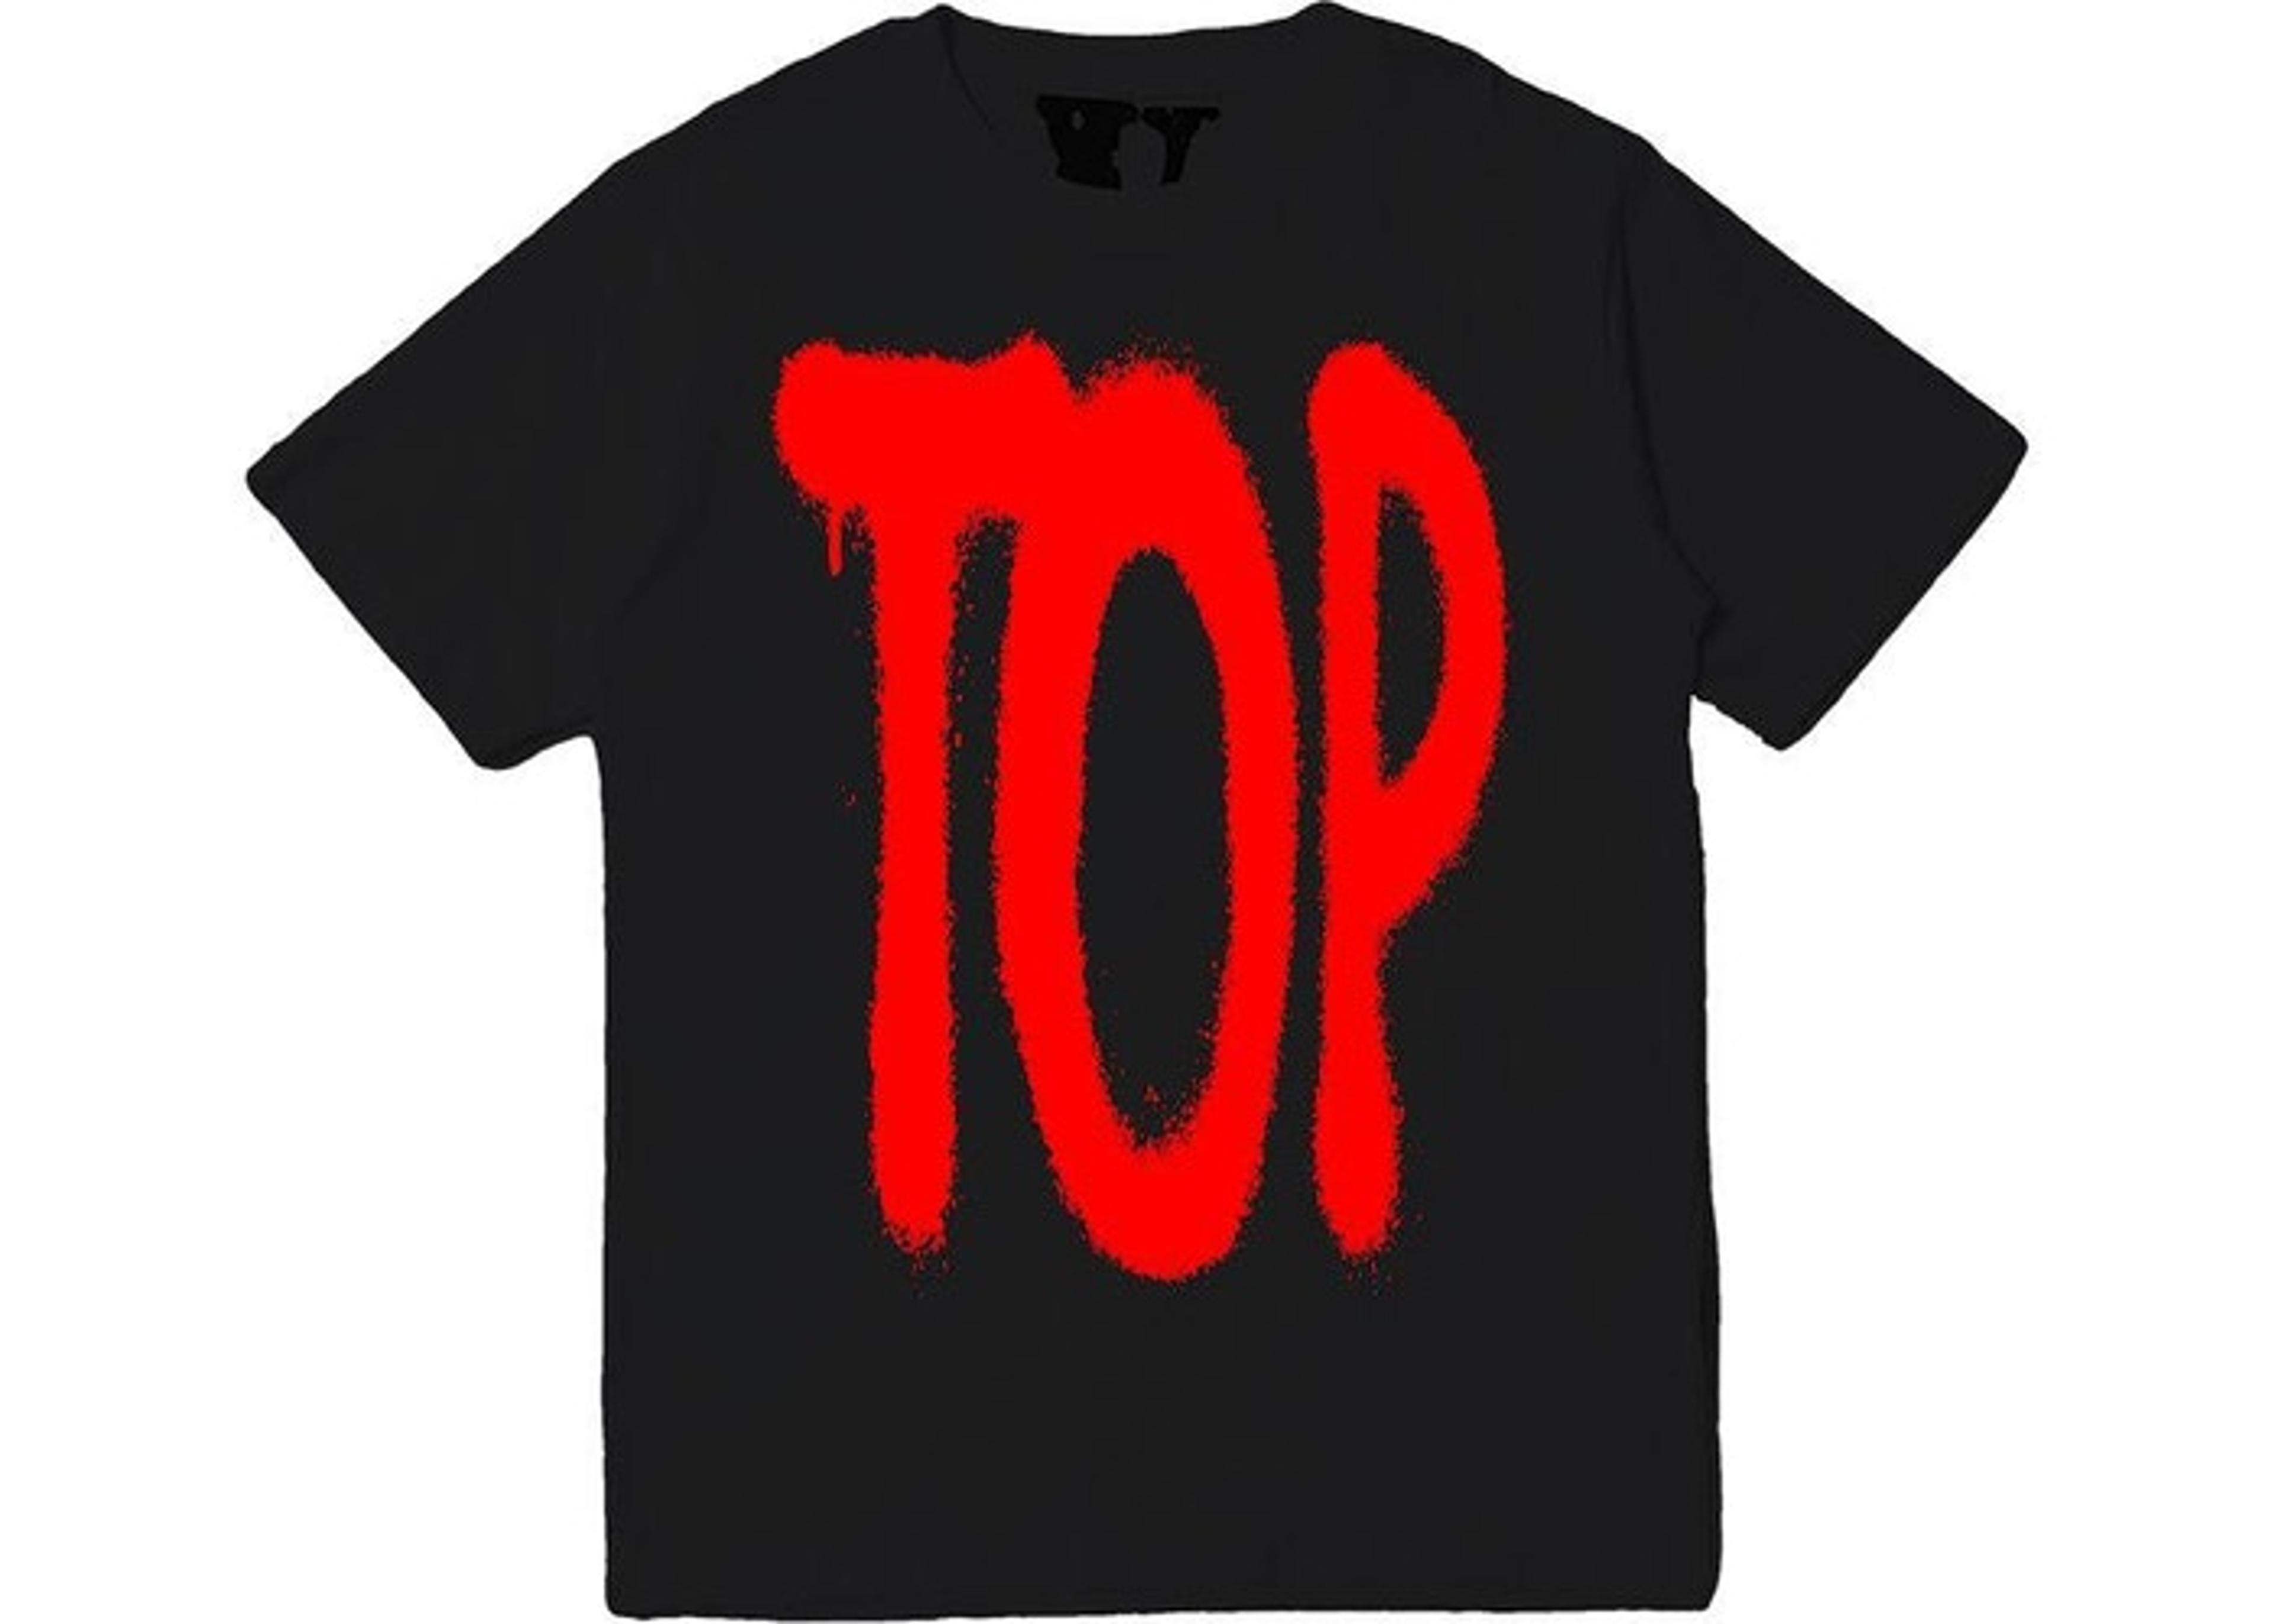 Vlone X NBA Youngboy Top T-Shirt - Black